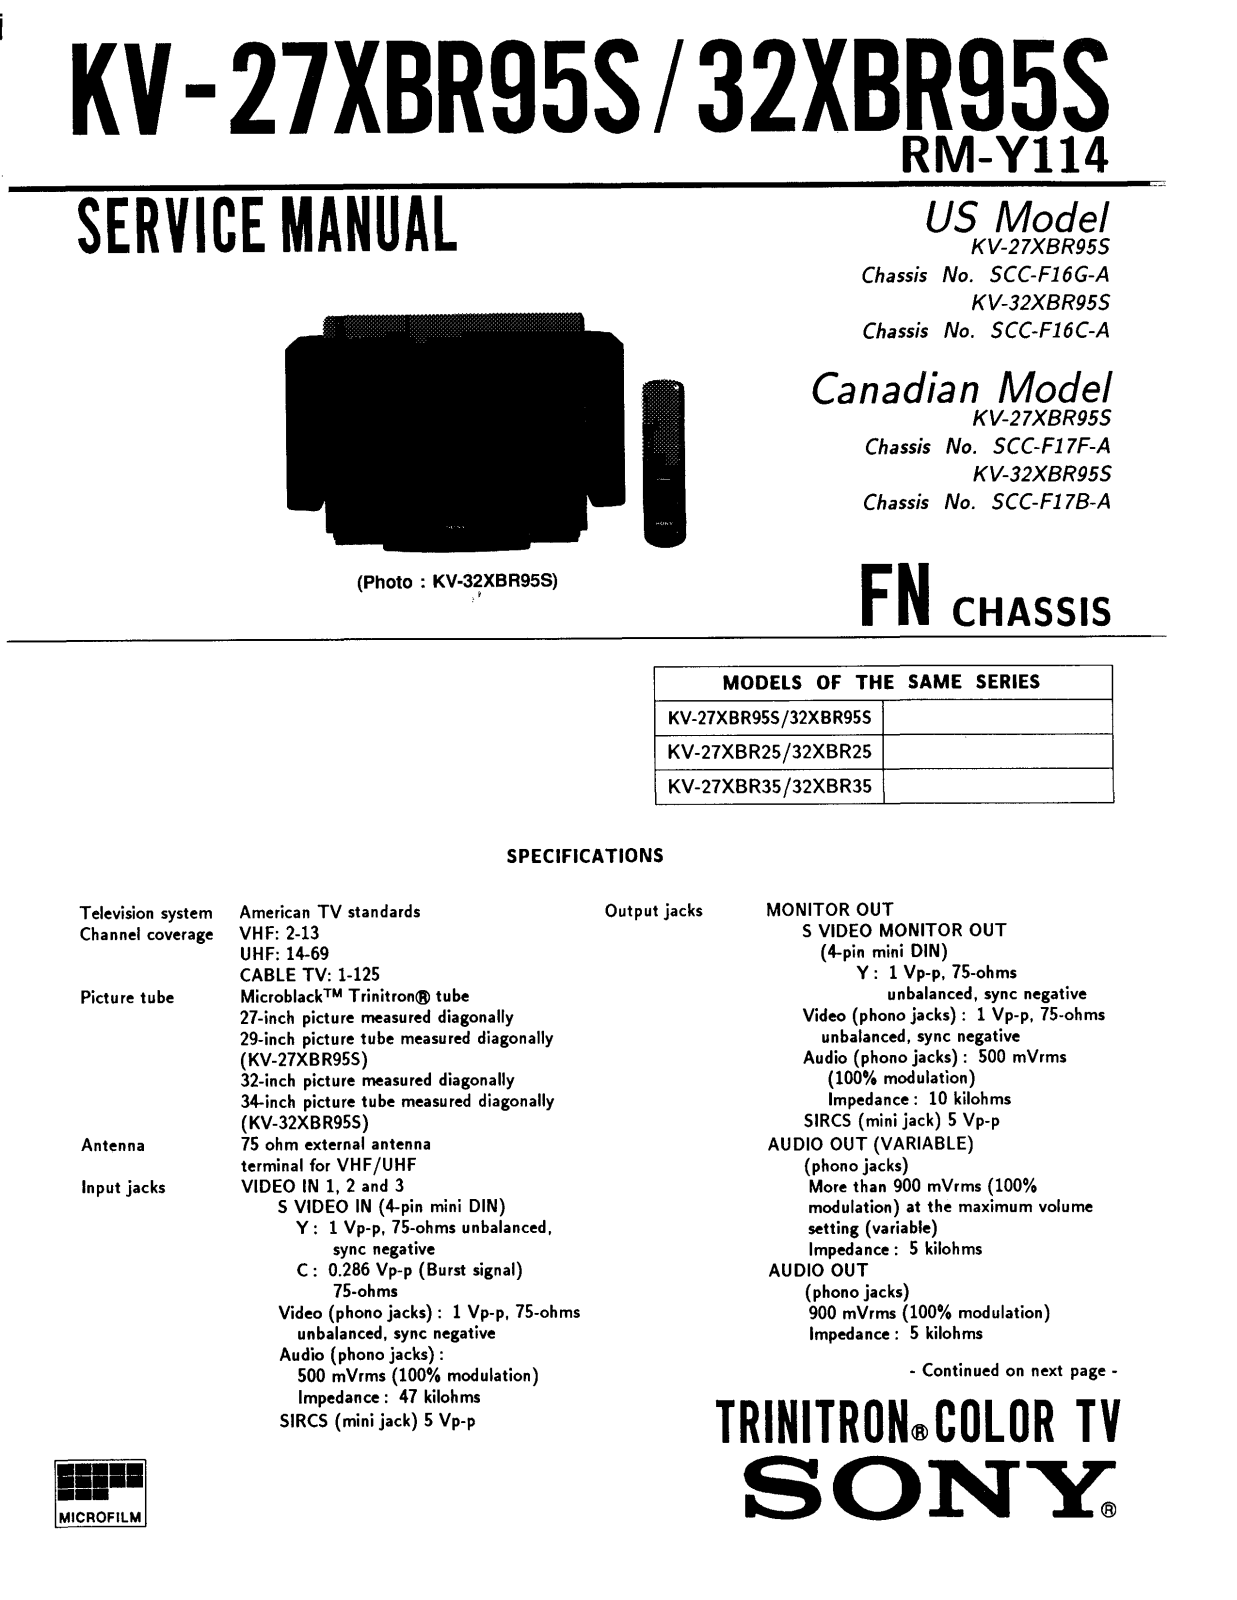 Sony KV 27XBR95S Service Manual